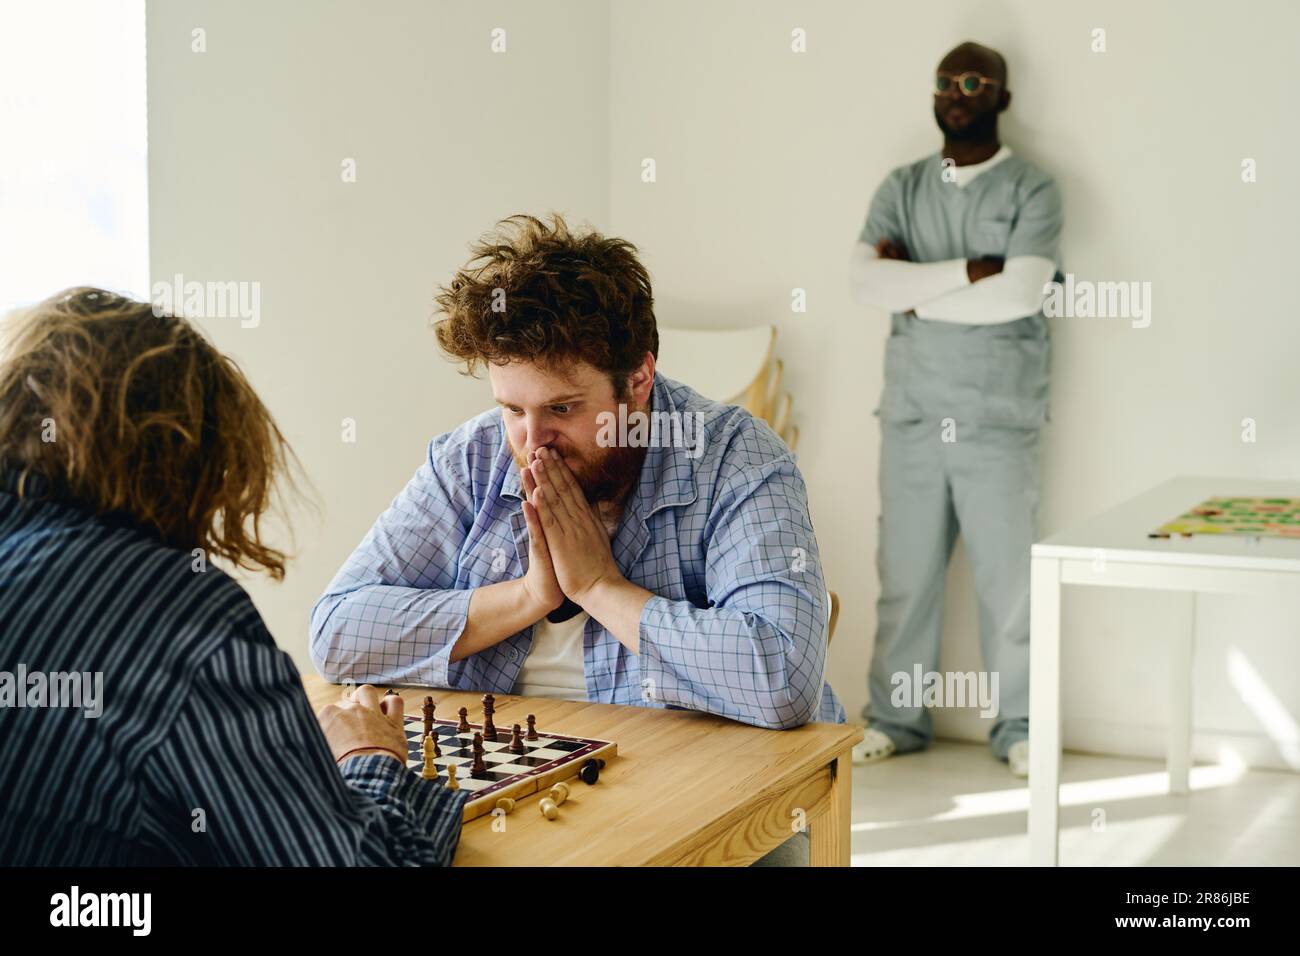 Junger nervöser Mann, der Handflächen von Gesicht zu Gesicht zusammenhält und Schachbrett betrachtet, während er mit einem anderen männlichen Patienten der Nervenklinik spielt Stockfoto